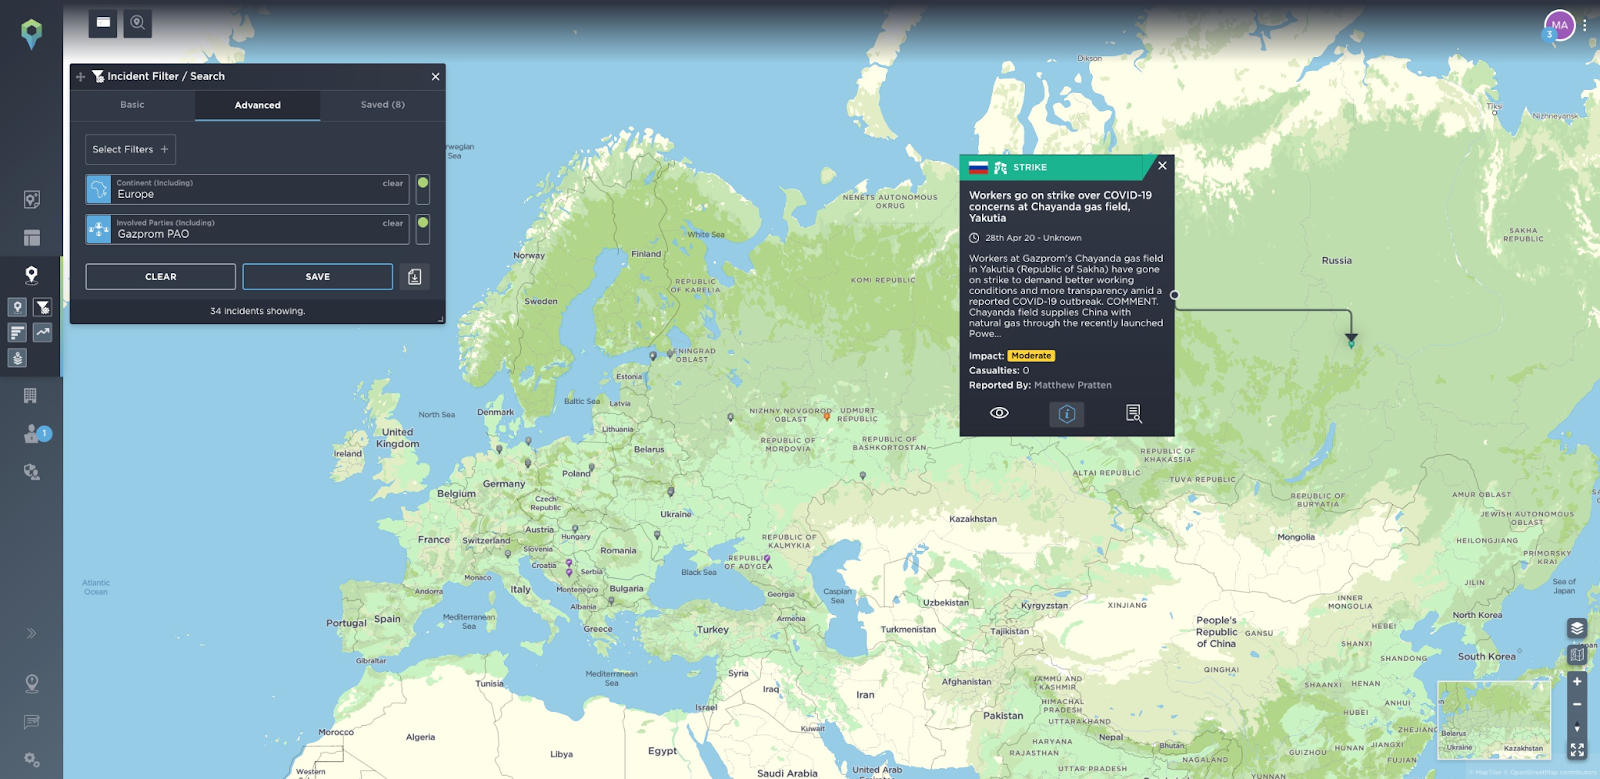 Gazprom gas nord stream 2 pipeline protest europe russia